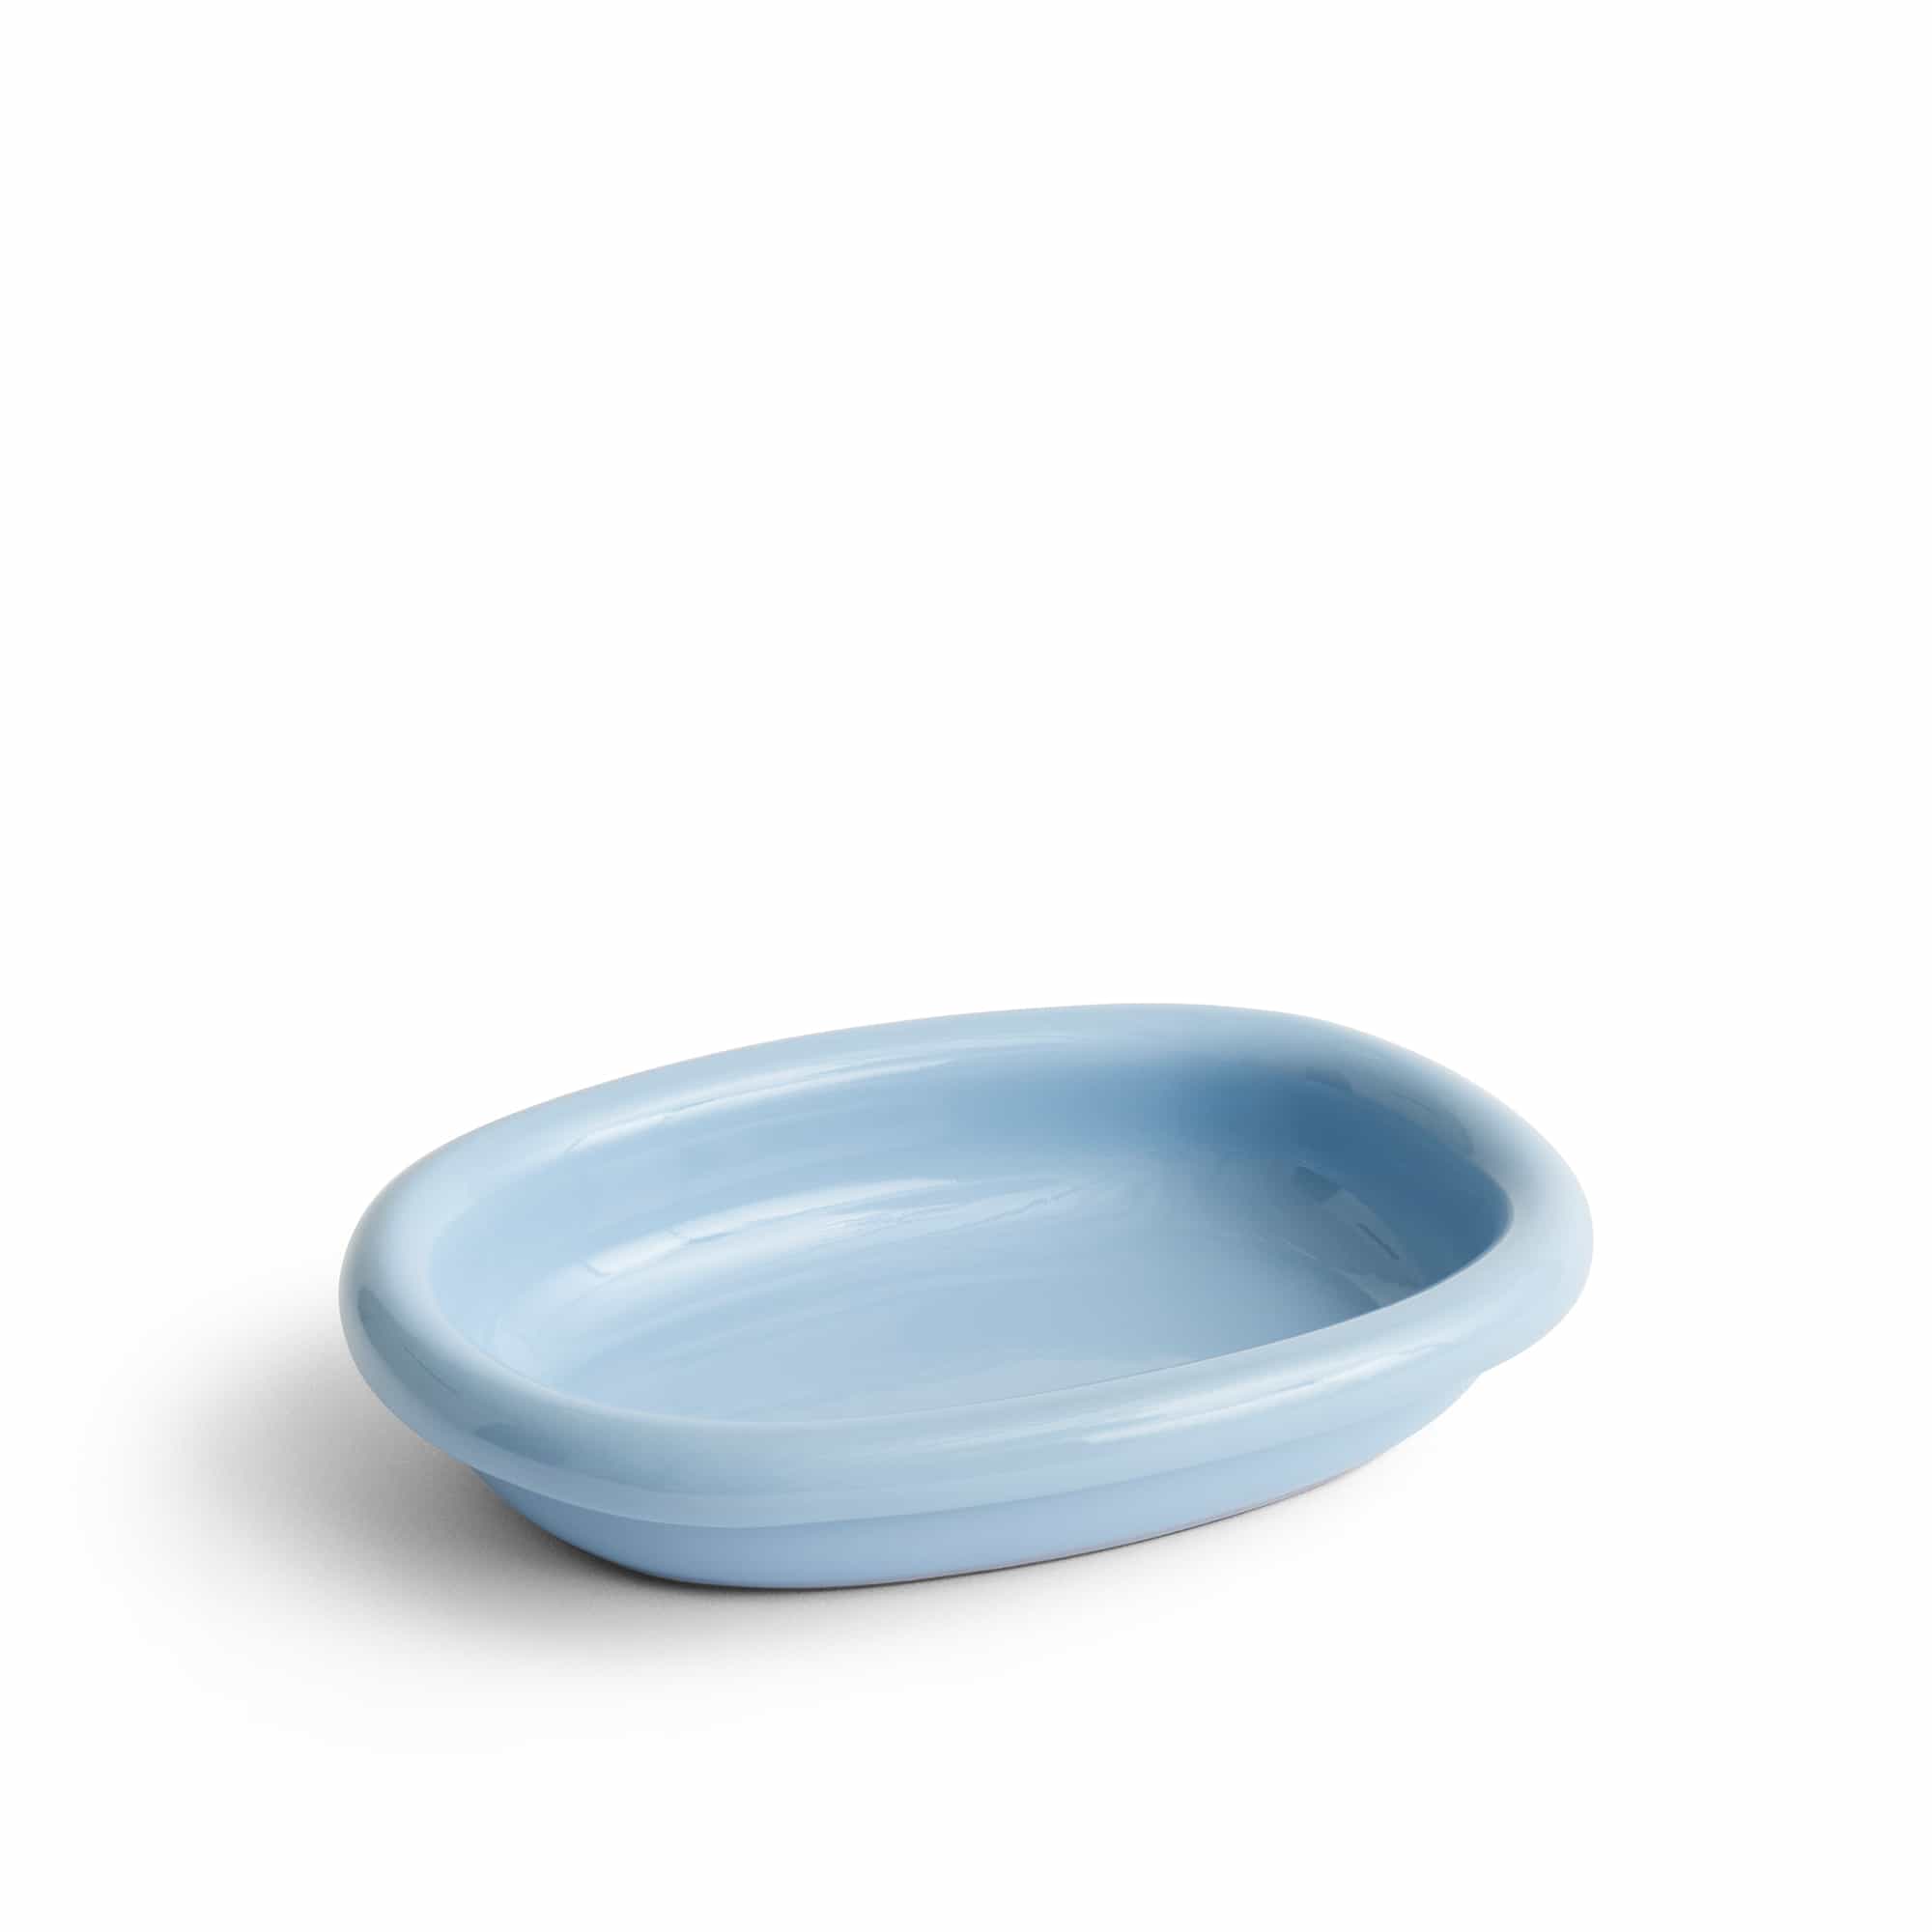 Barro Oval Dish Small